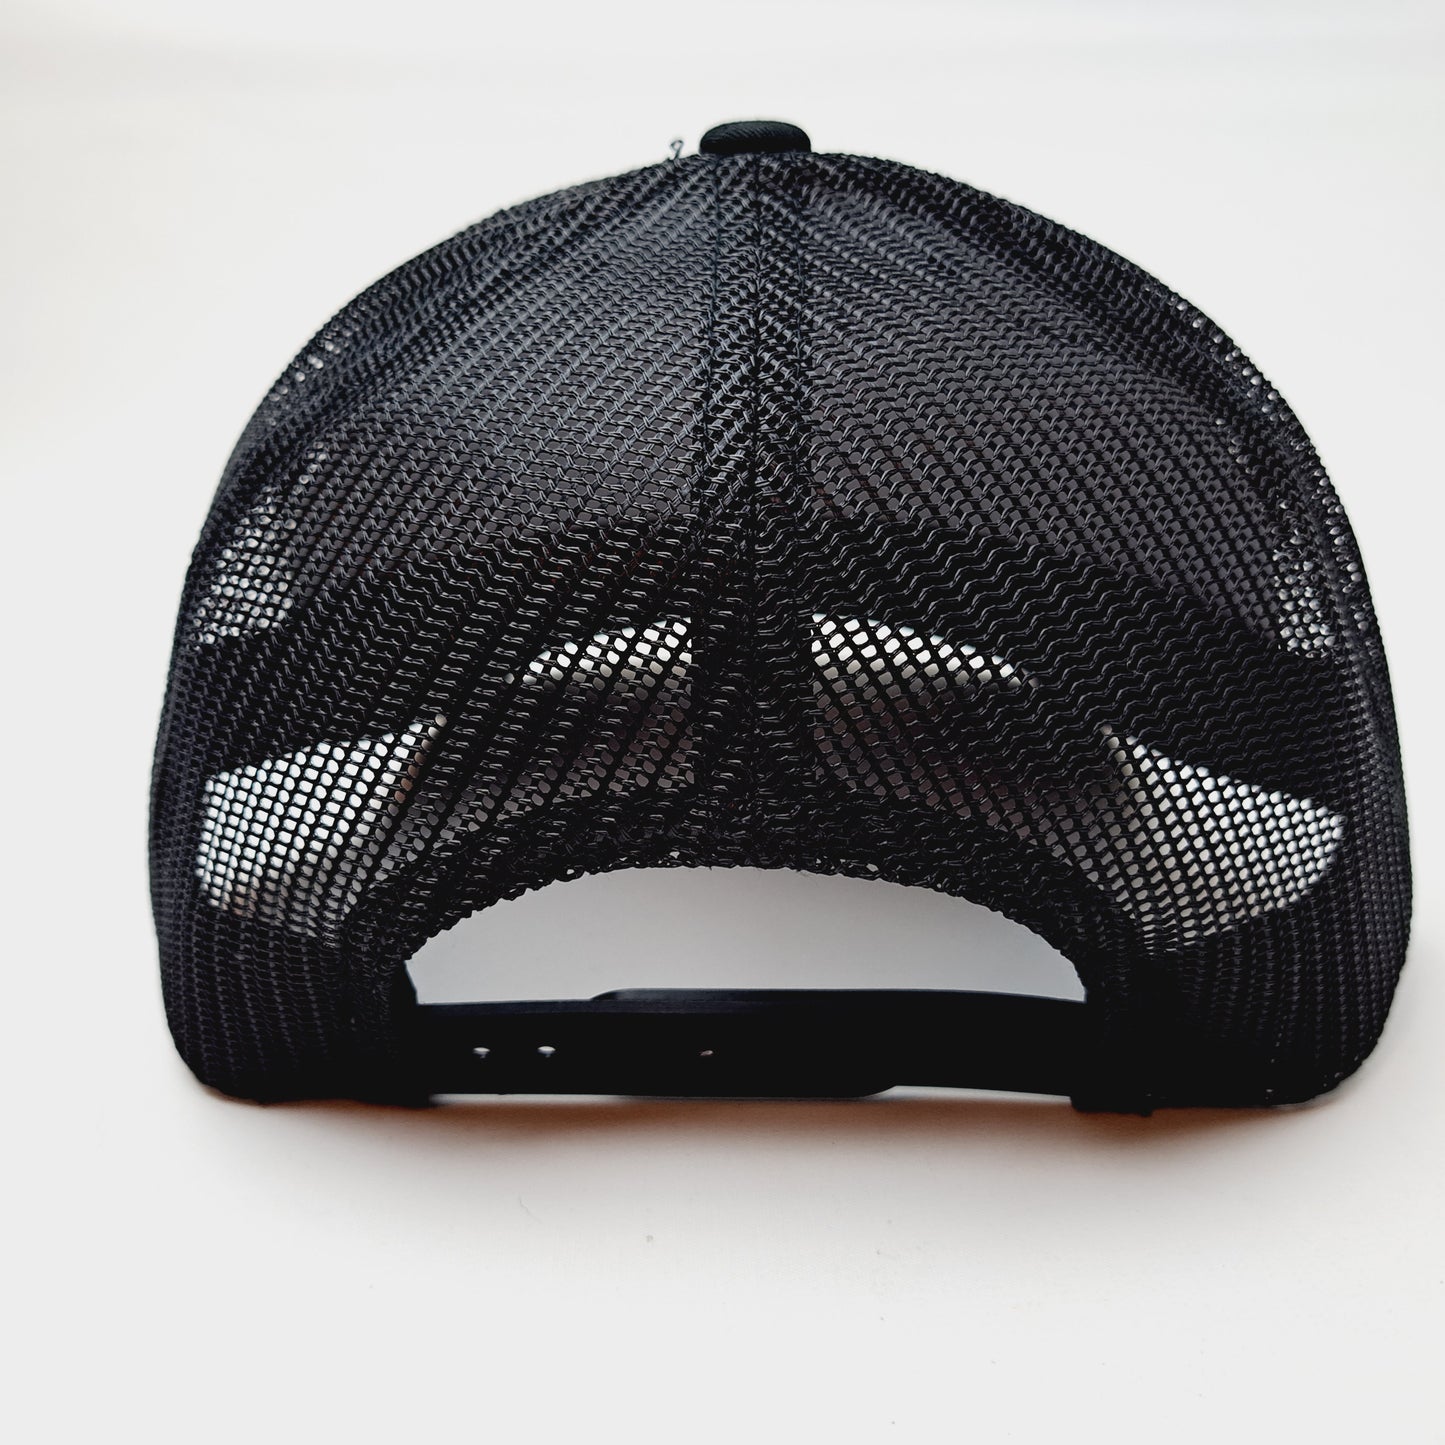 Copenhagen Patch Trucker Mesh Snapback Cap Hat Black